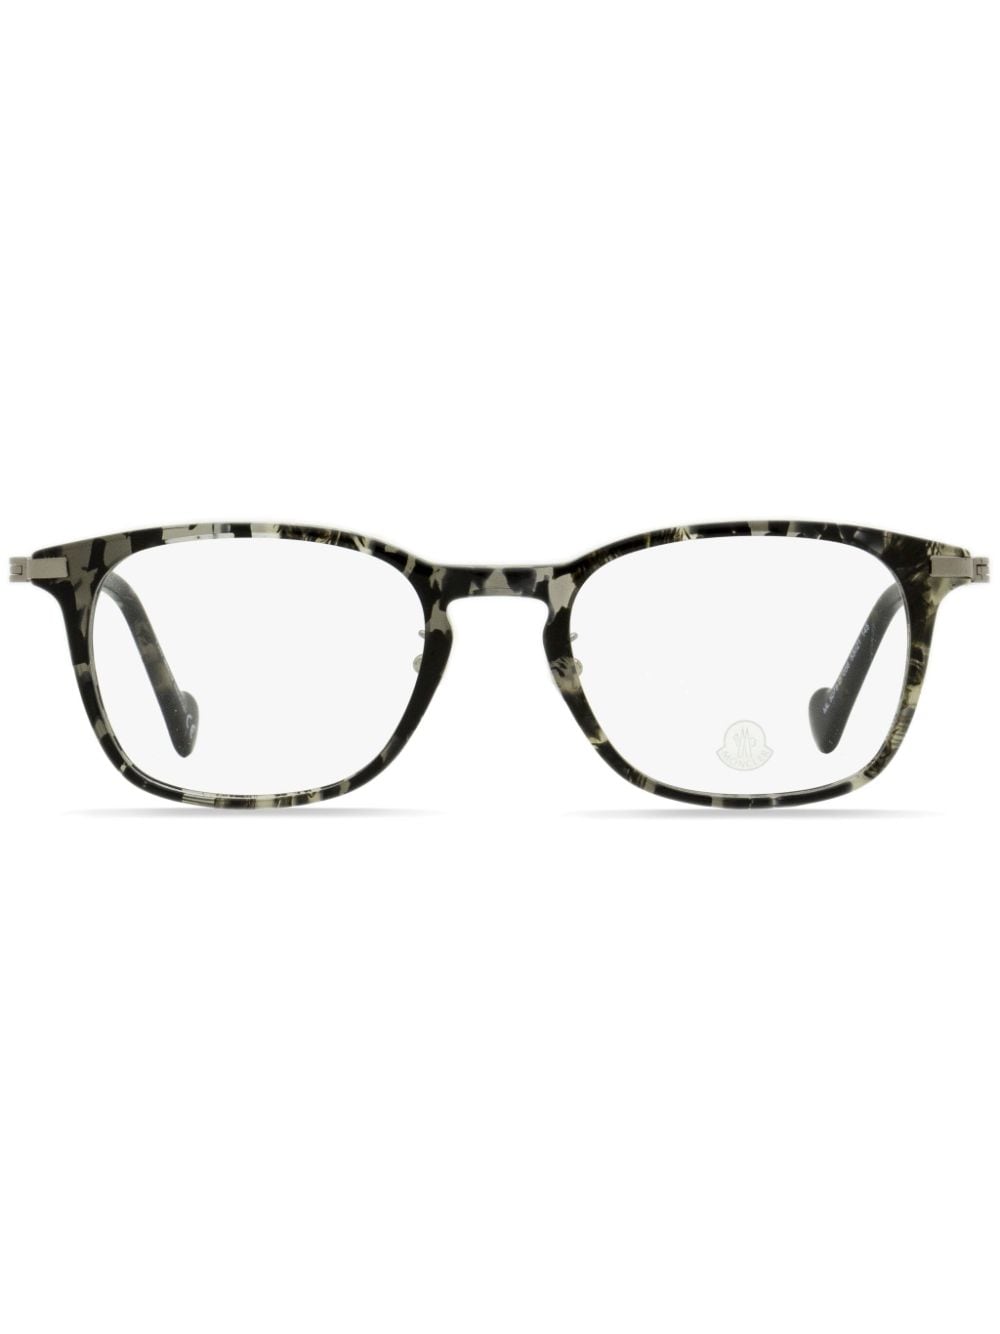 Moncler Eyewear tortoiseshell rectangular-frame glasses - Grey von Moncler Eyewear